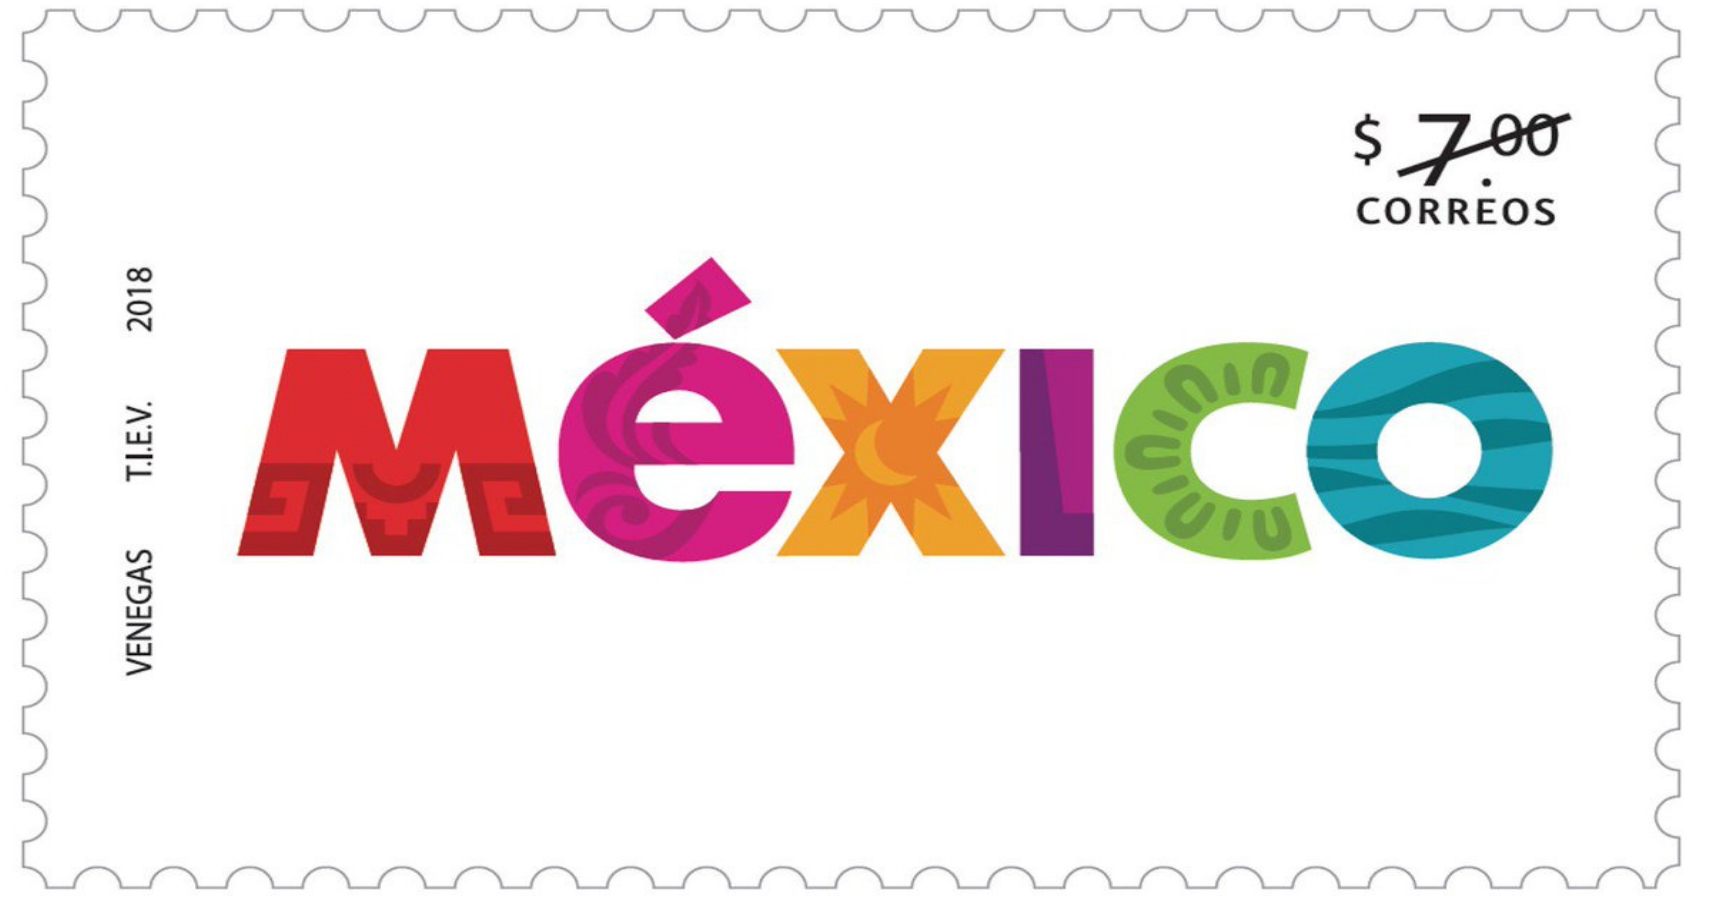  Estampilla postal de la Marca México